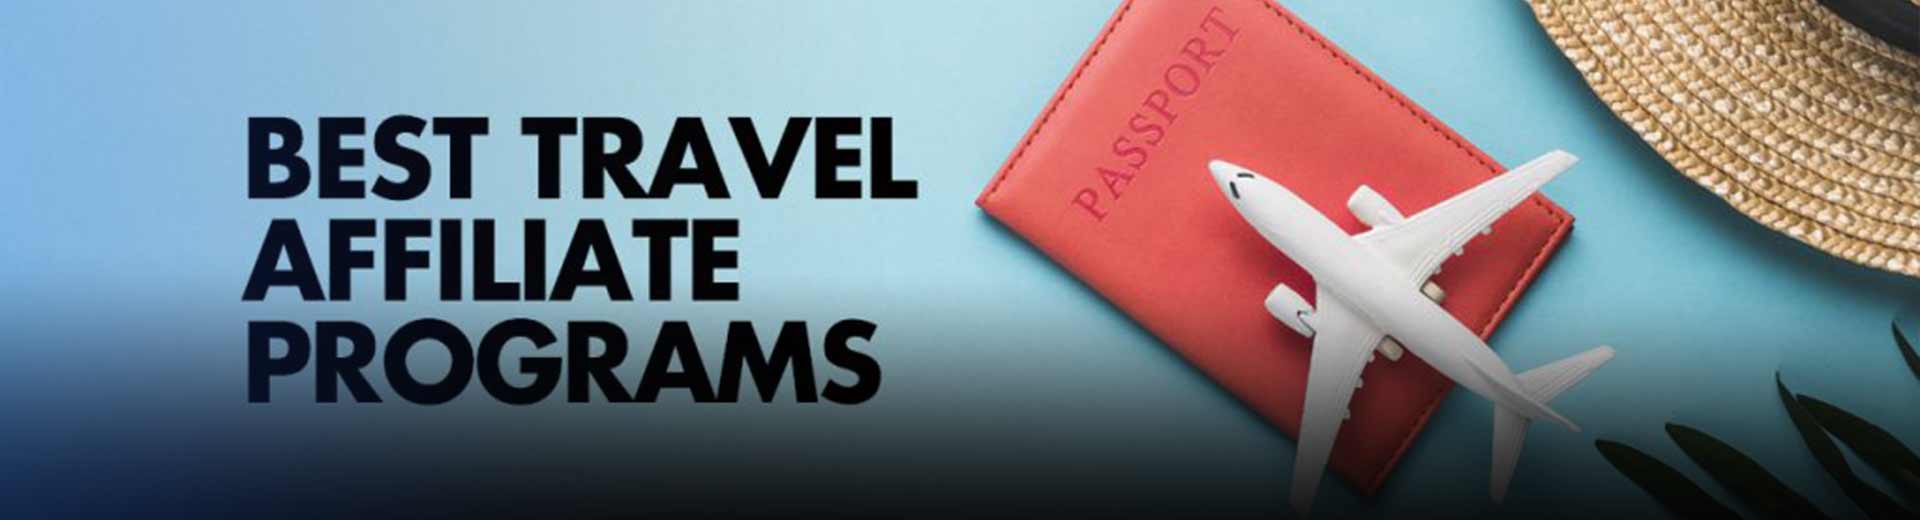 Los 20 mejores programas de afiliados de viajes